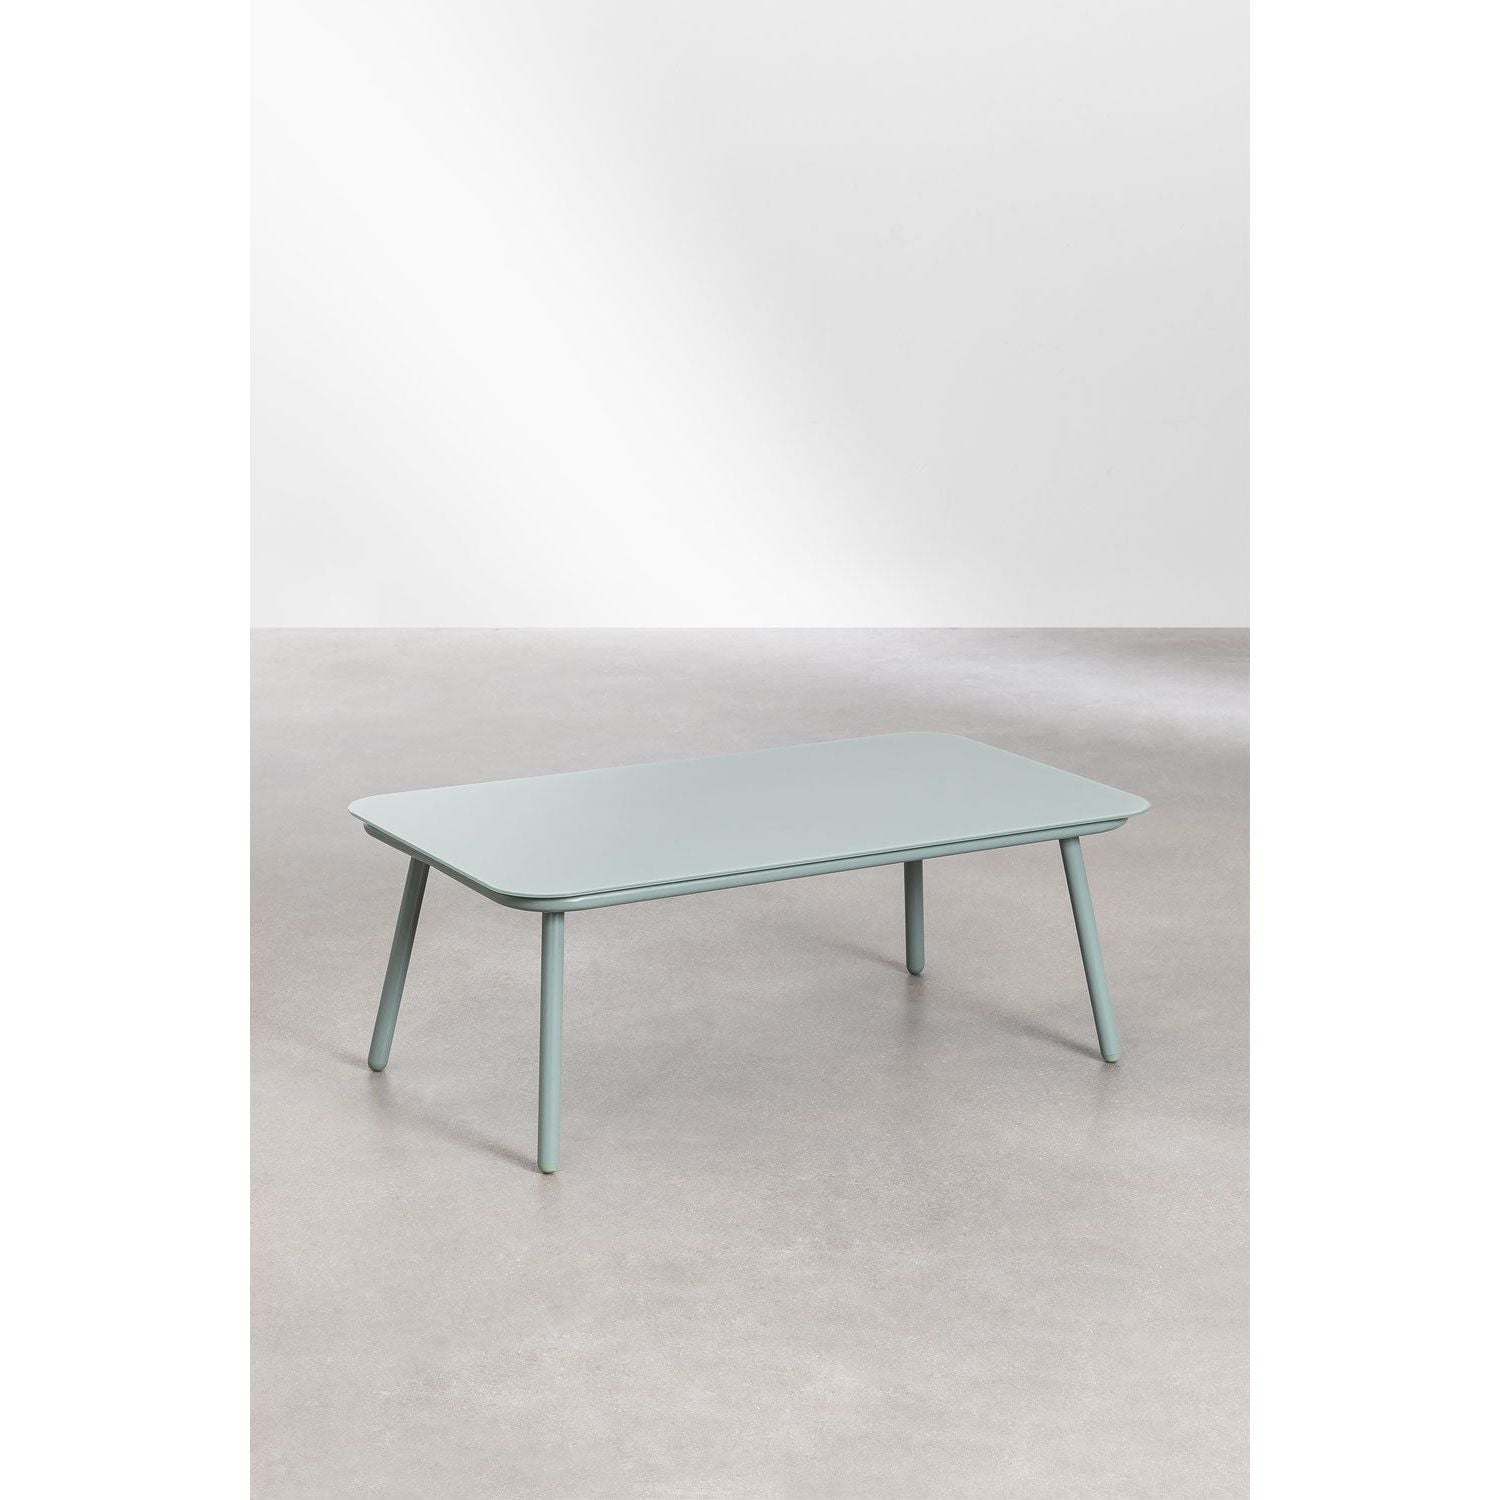 Lauko baldų komplektas ARTIZAN, aliuminis, žalia spalva